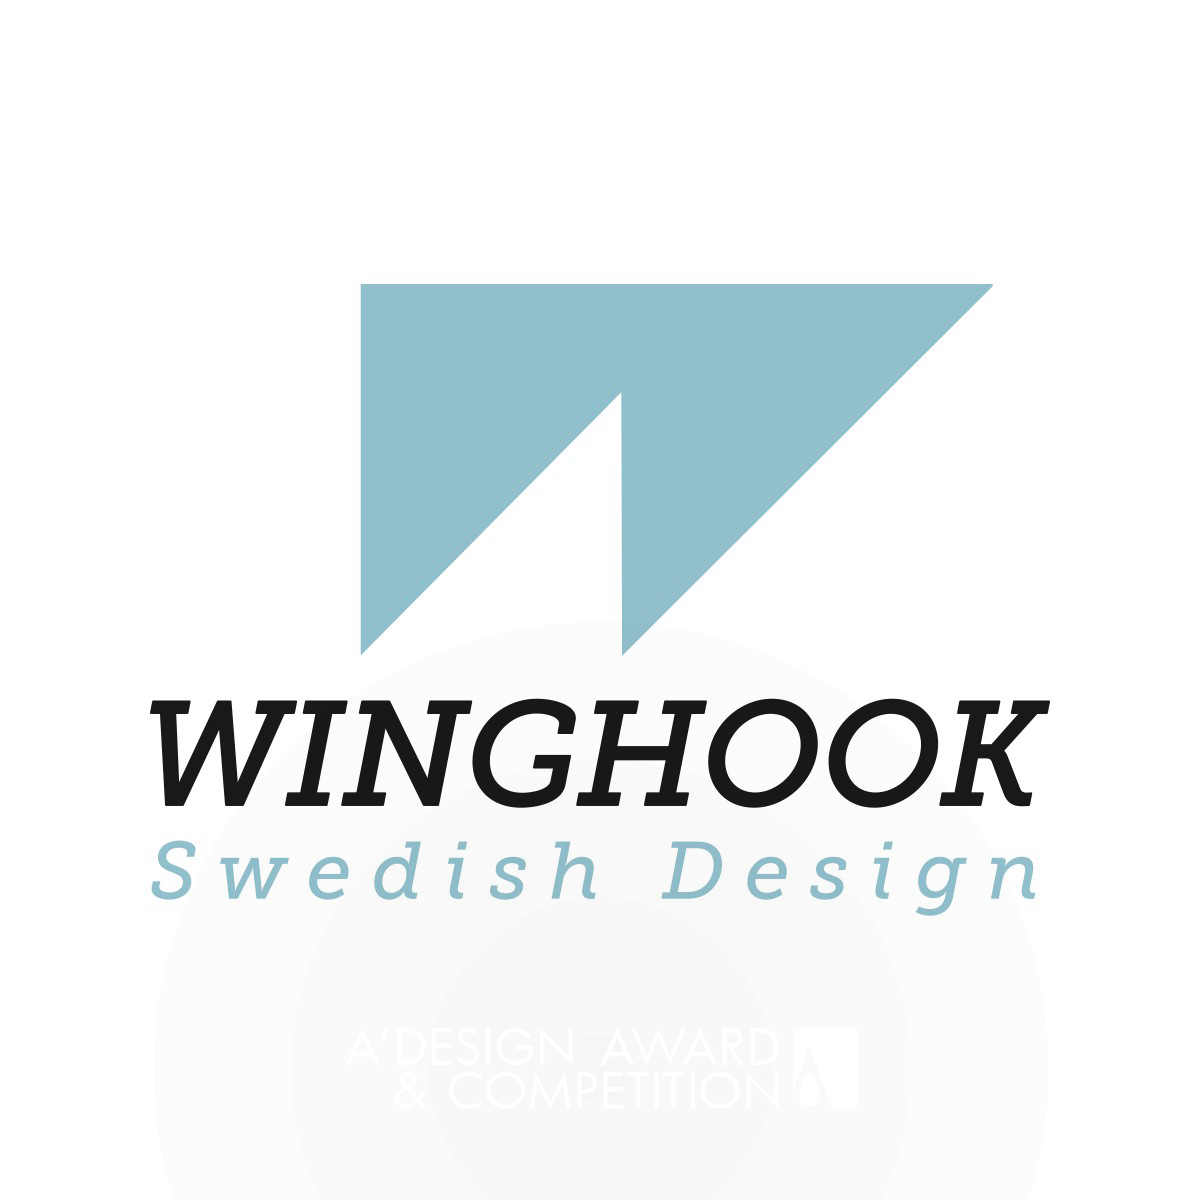 Winghook Branding System Corporate Identity by Daniel da Hora